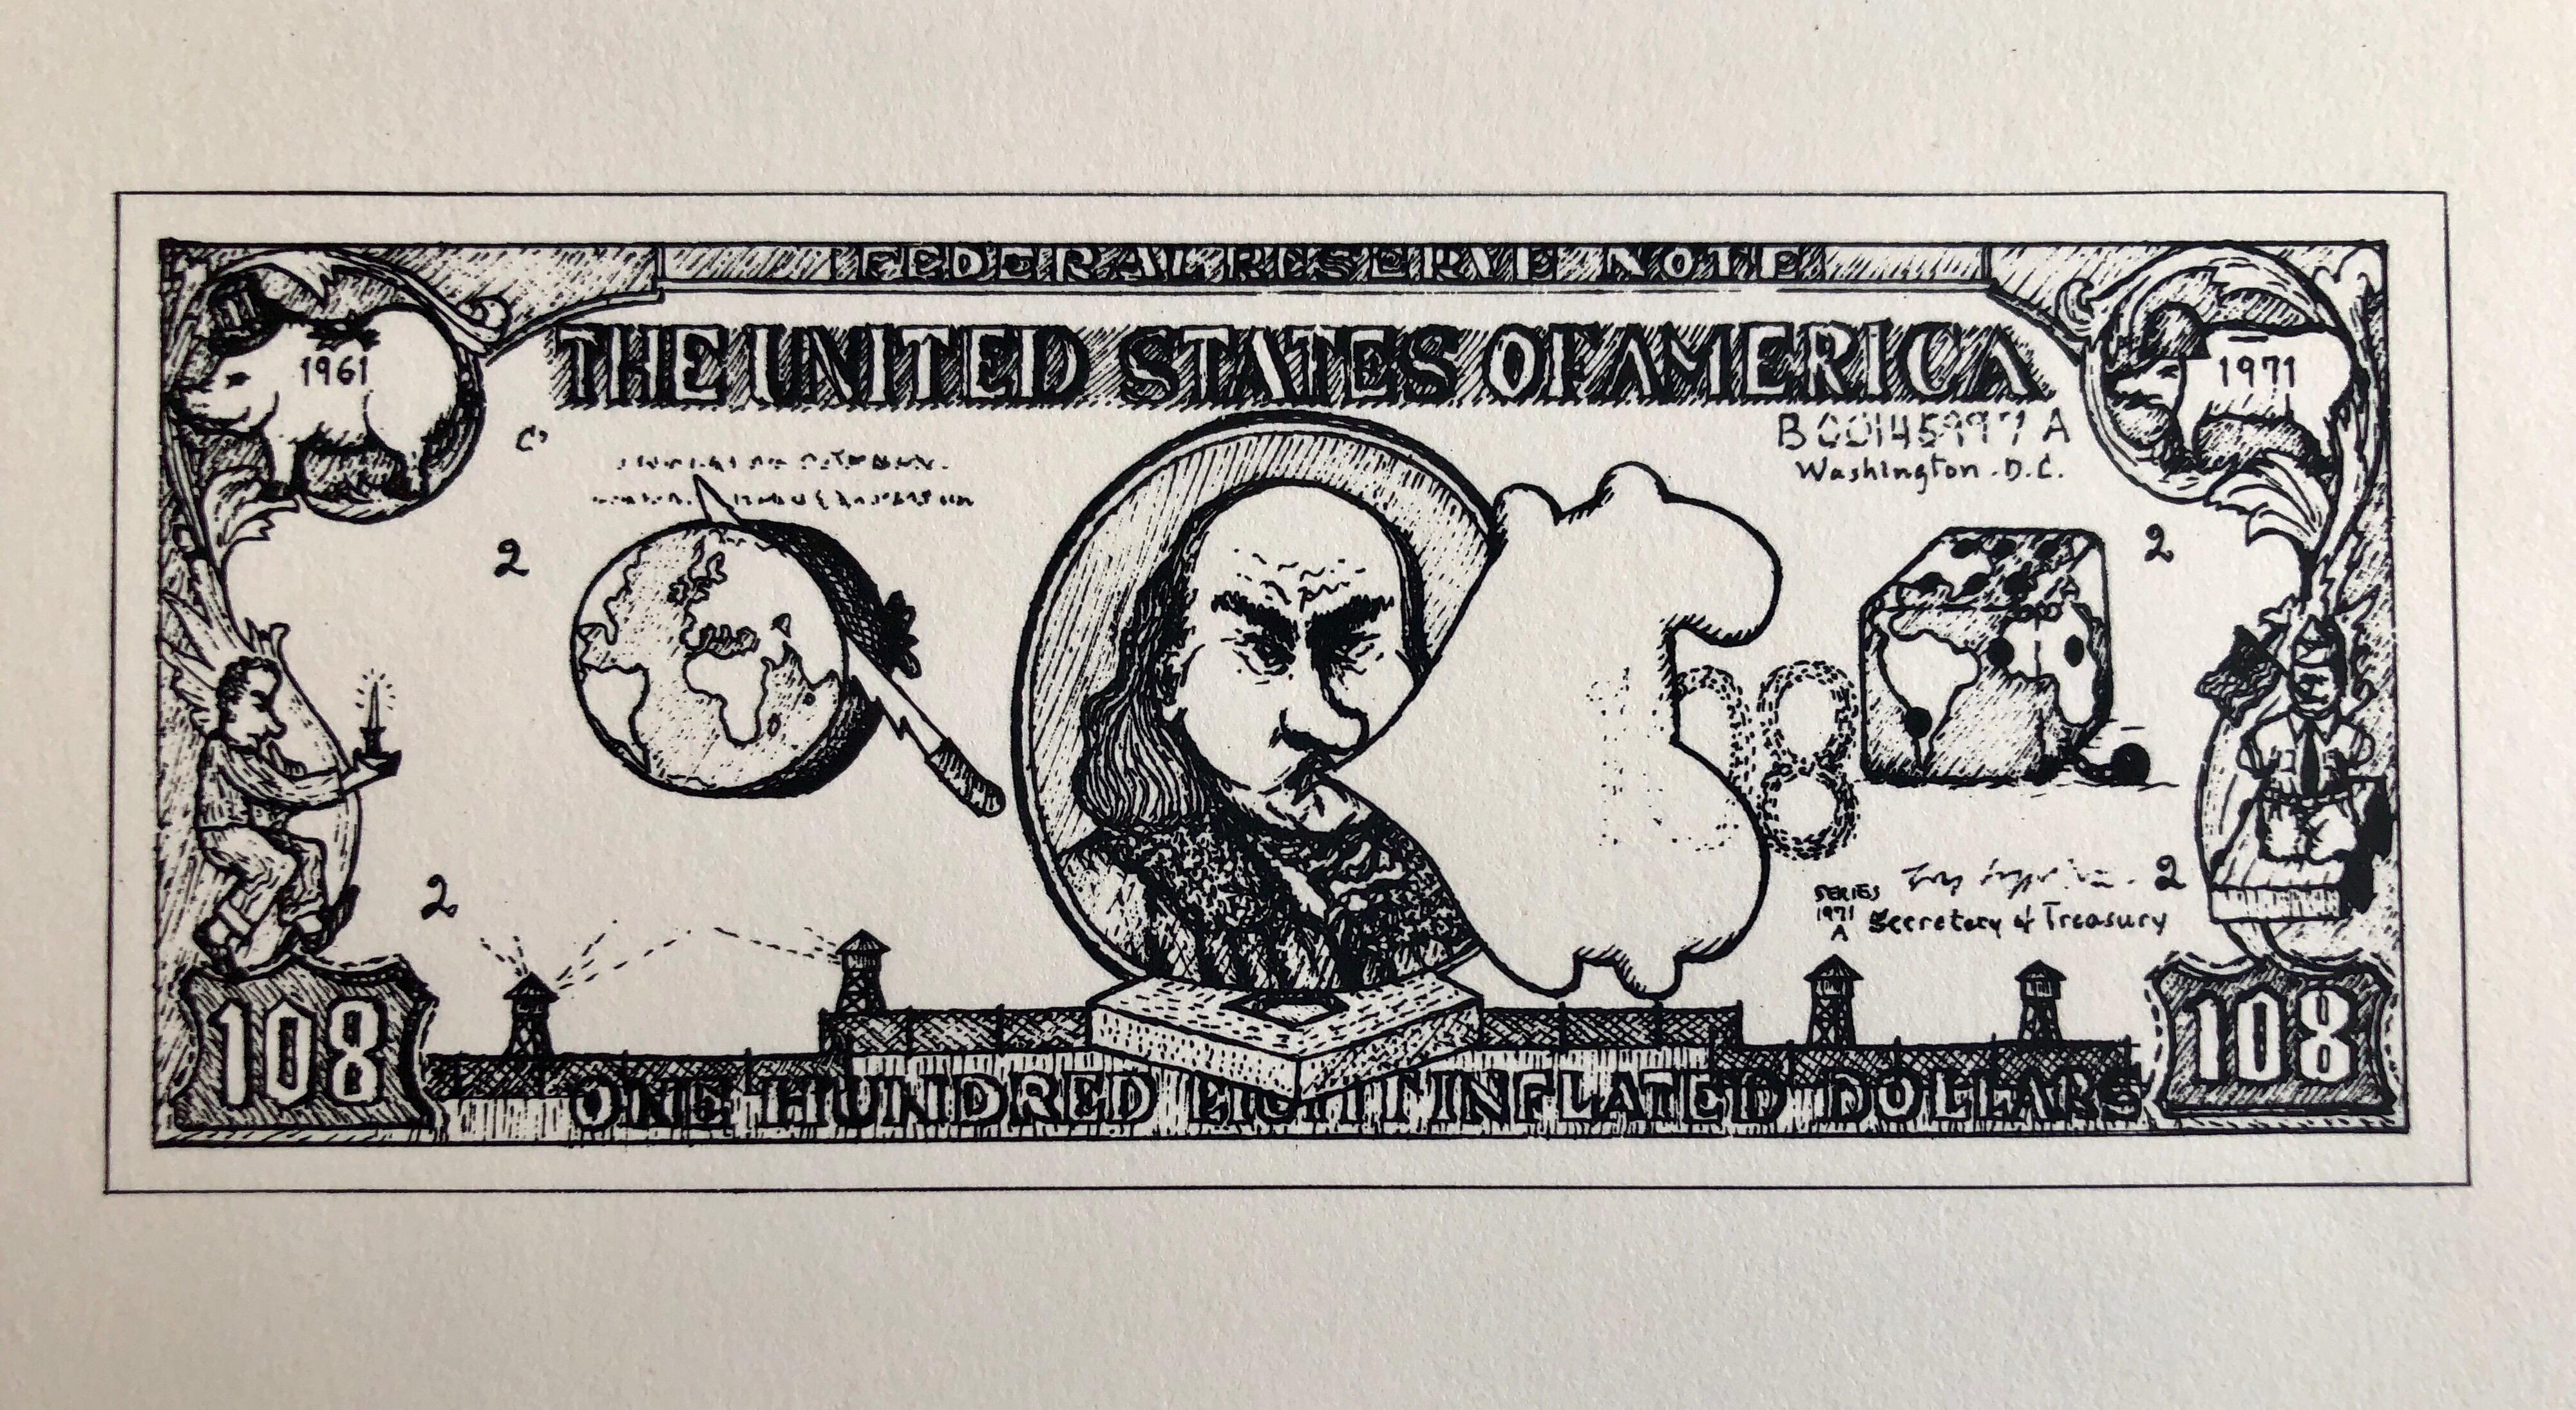 1960er Pop Art Siebdruckdruck 108$ Bill Inflation Handsigniert und nummeriert – Print von Oyvind Fahlstrom